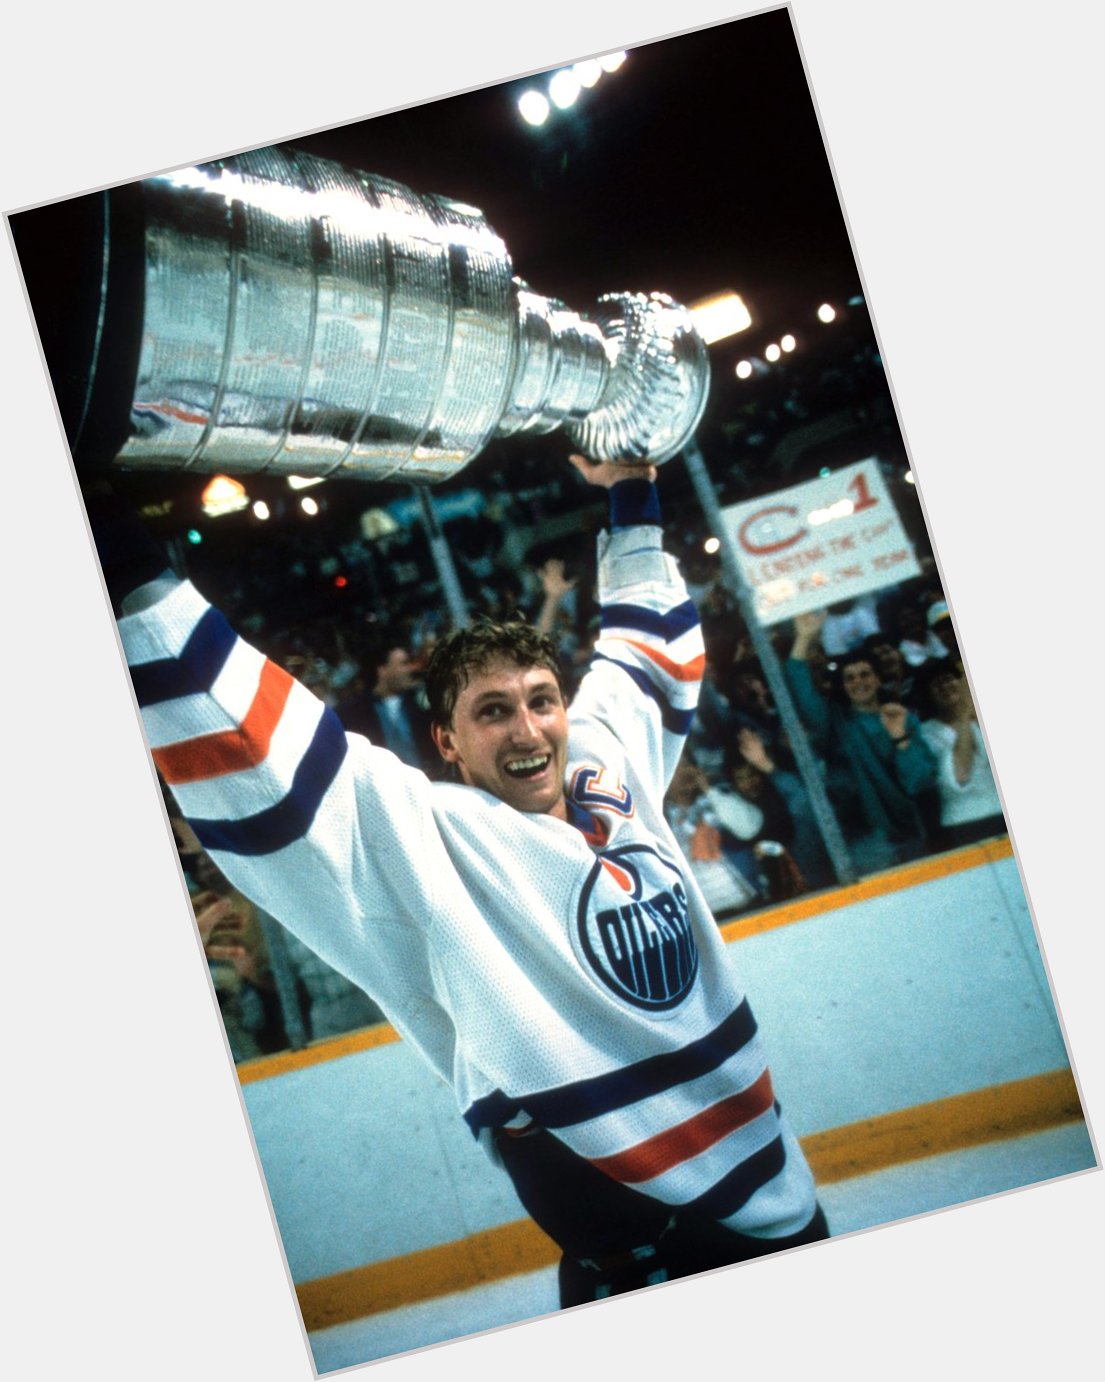 99 turns 59.

Happy birthday to \"The Great One,\" Wayne Gretzky. 